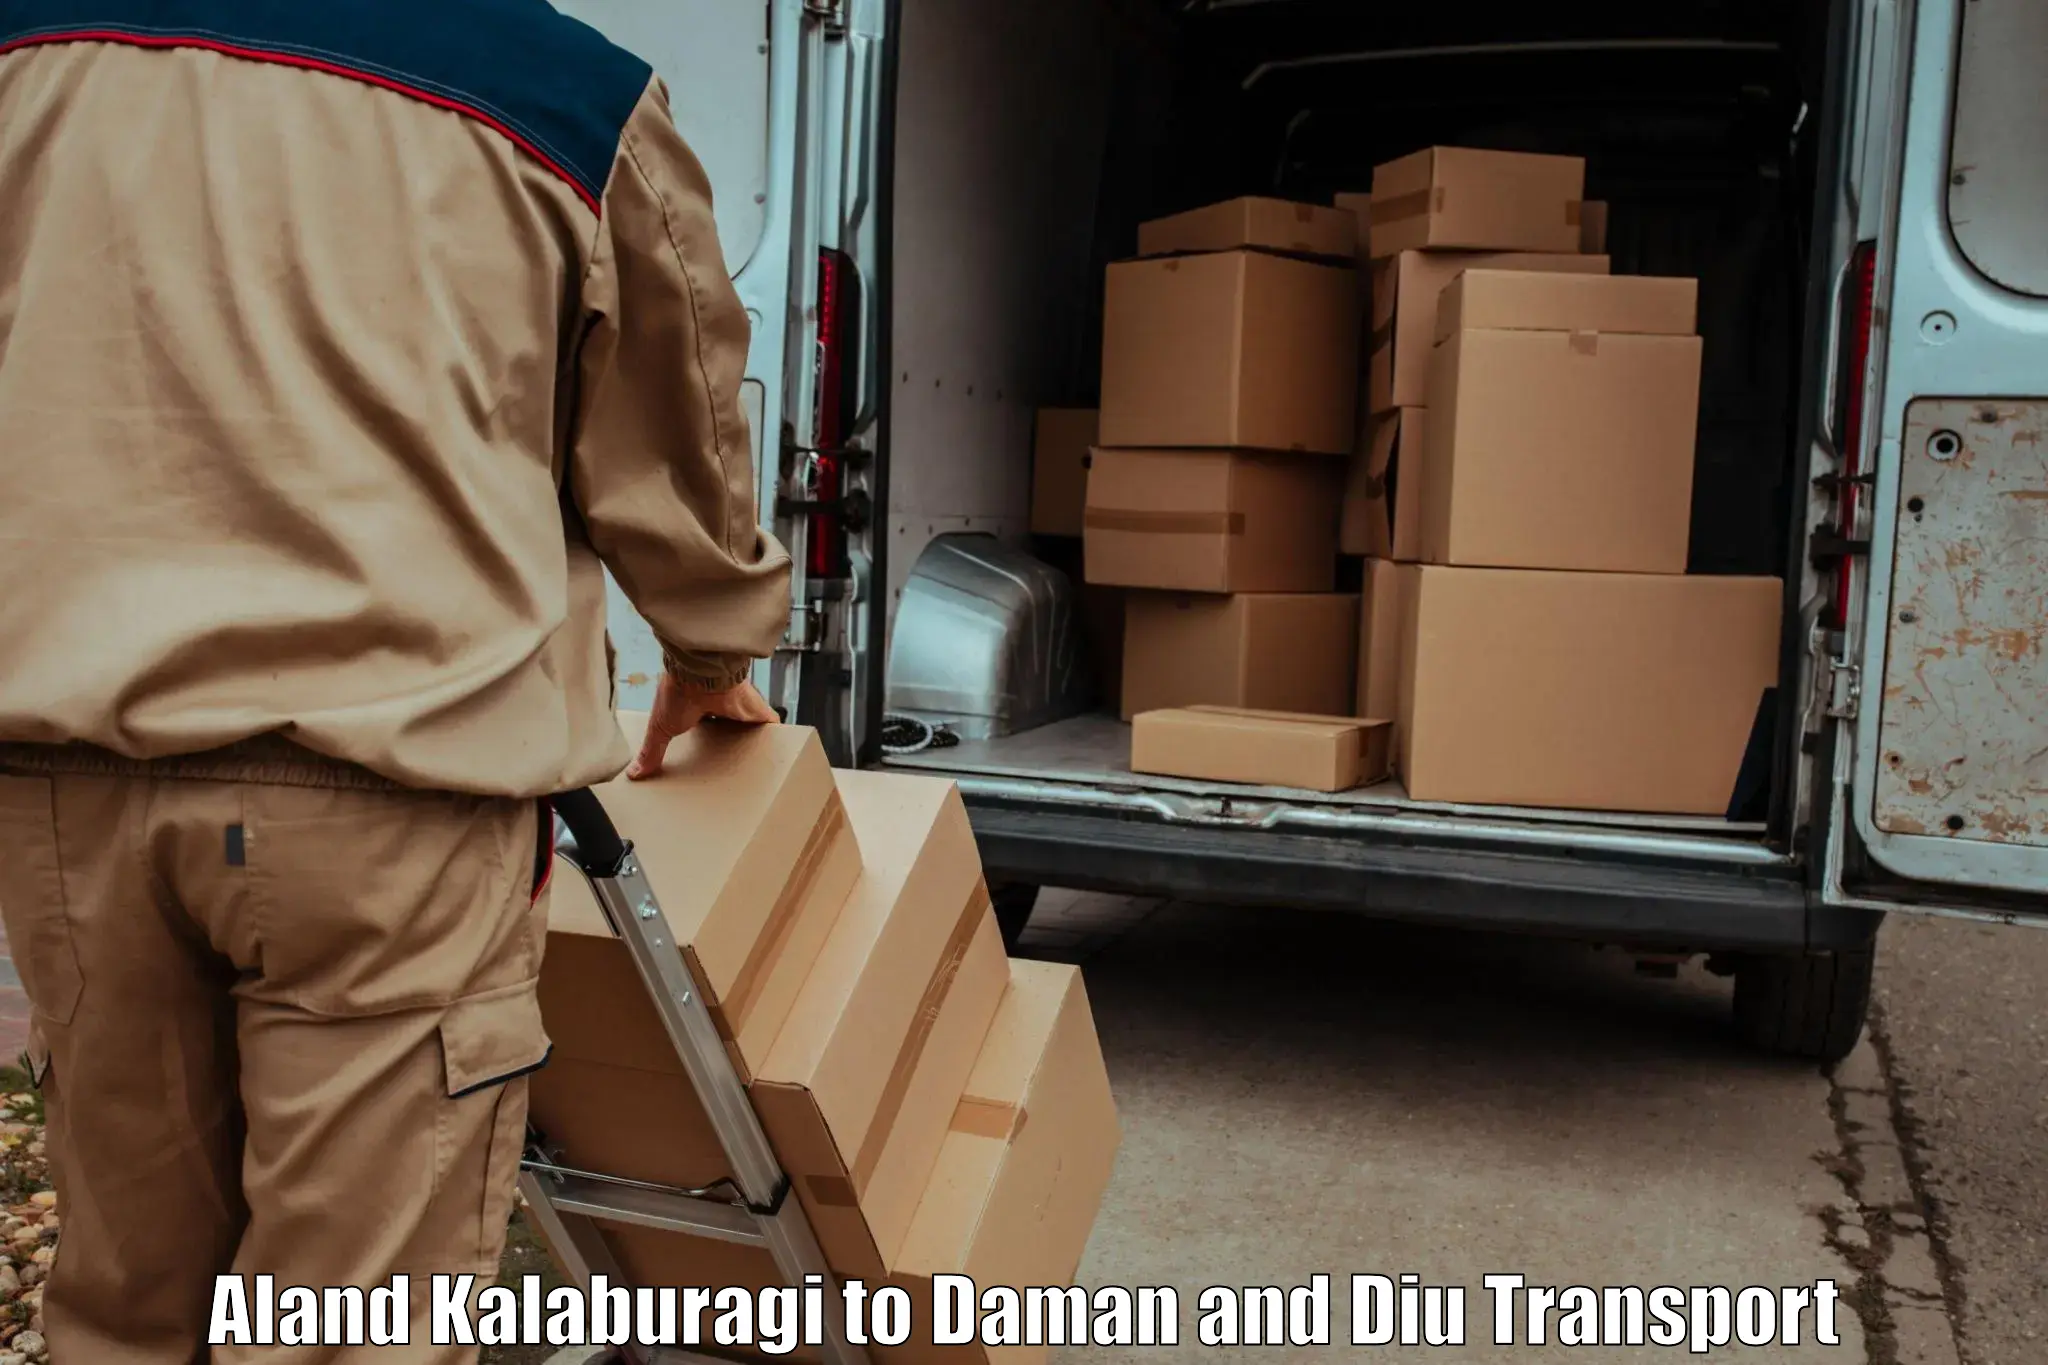 Vehicle parcel service Aland Kalaburagi to Diu